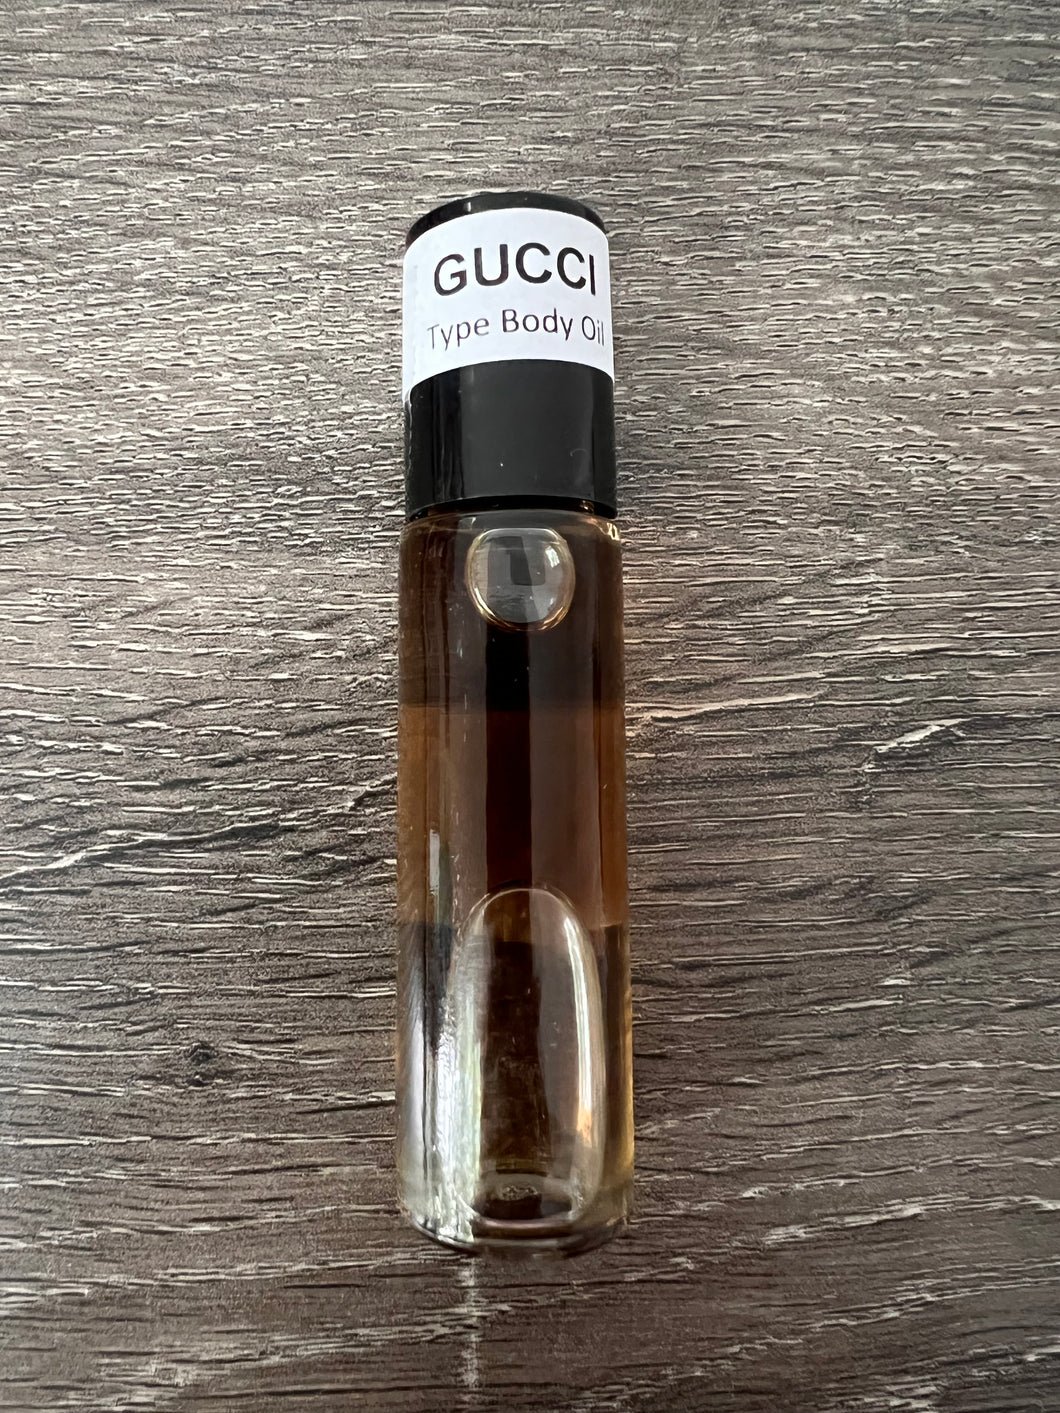 Gucci Body Oil